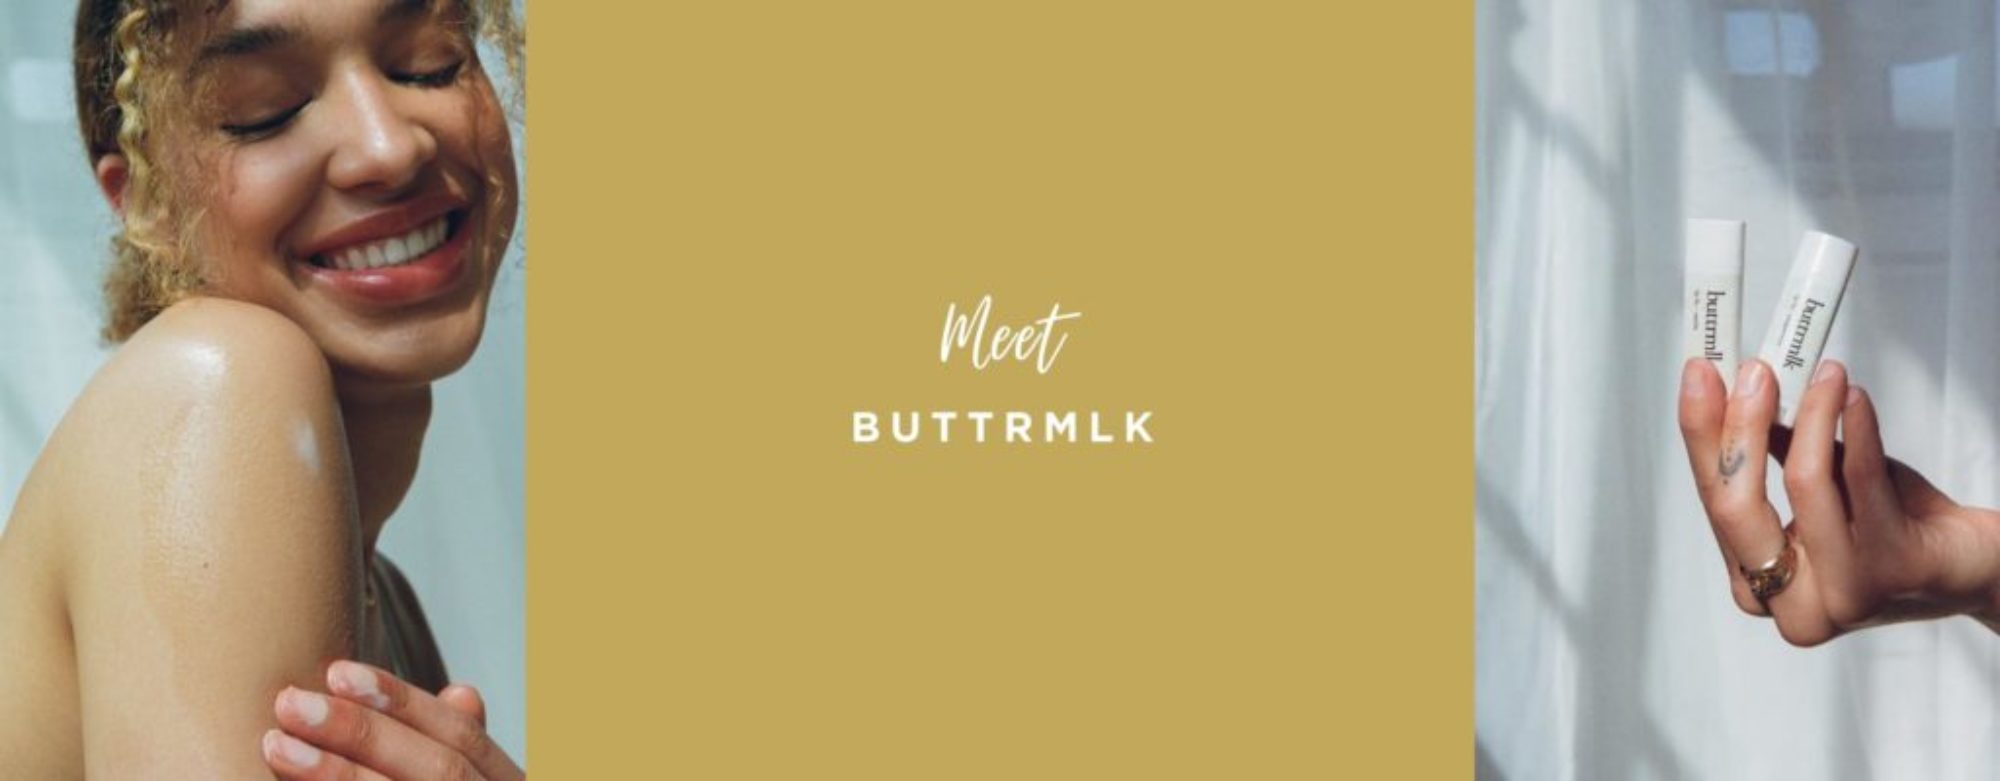 meet buttrmlk